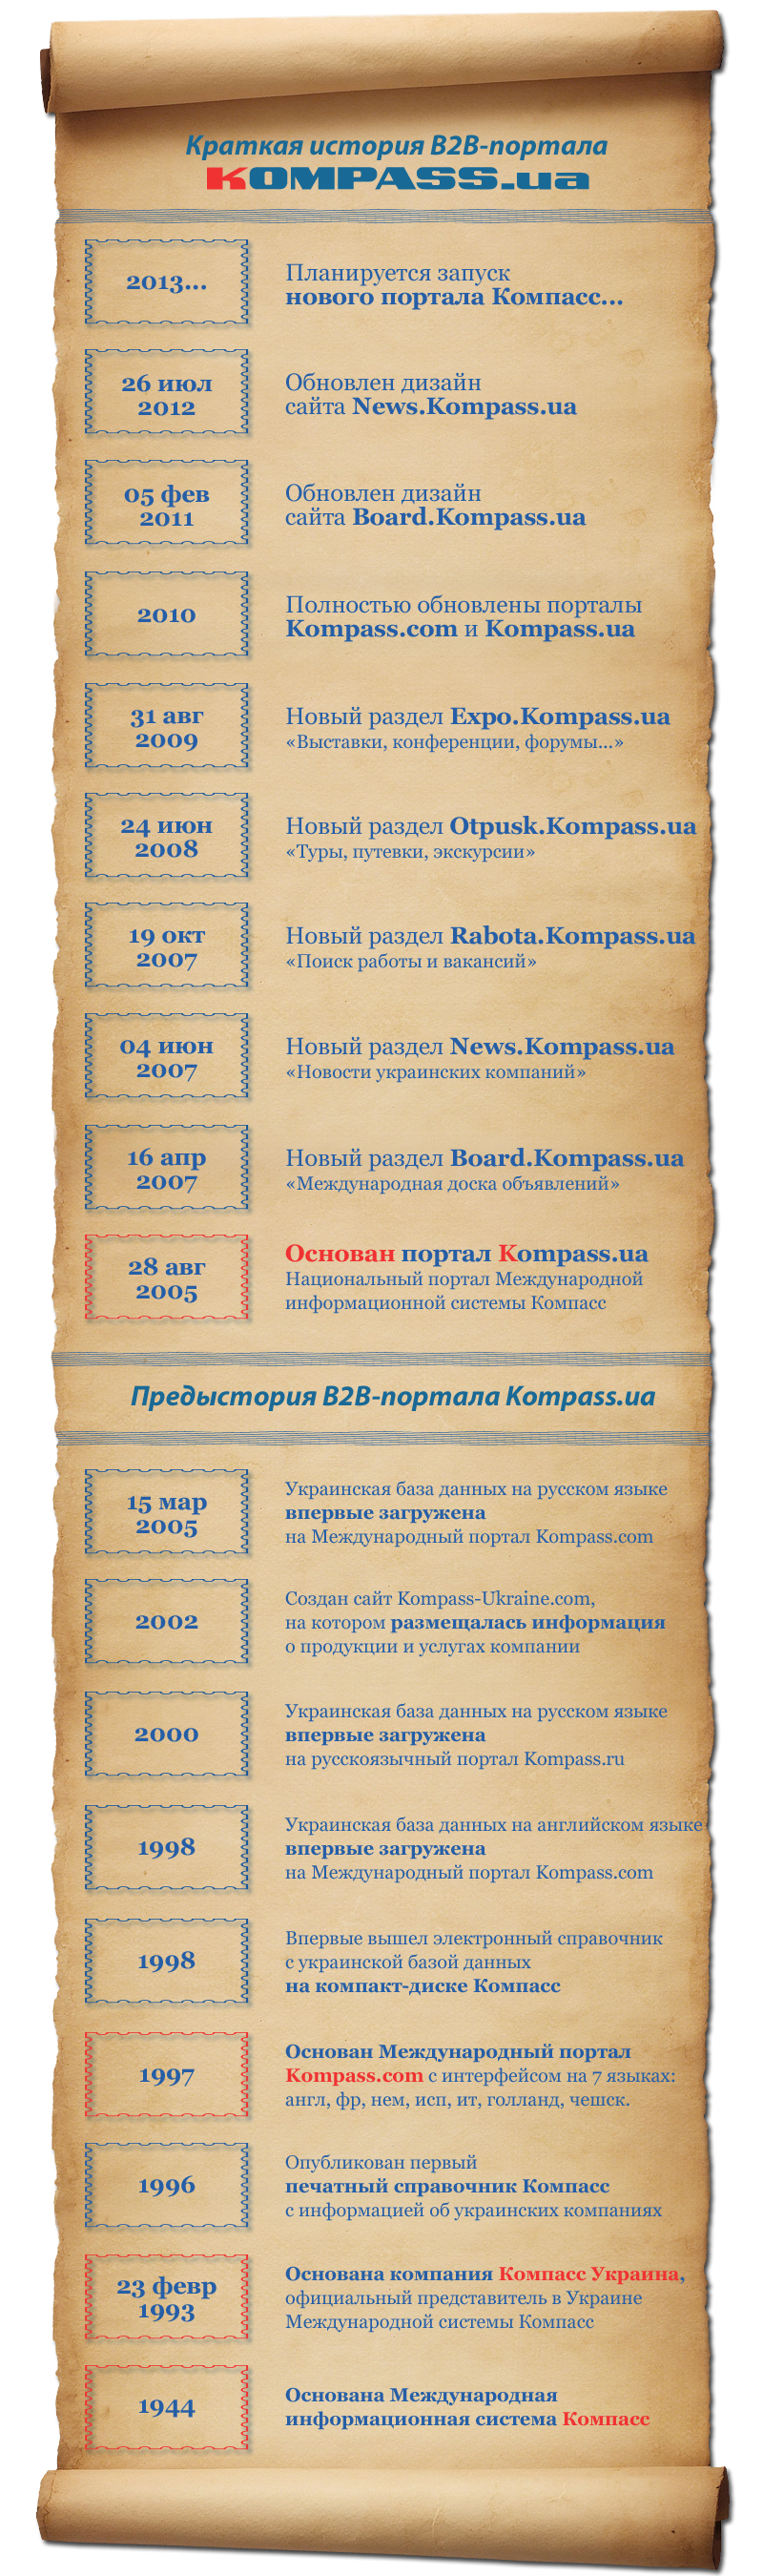 Инфографика: летопись главных событий B2B-портала Kompass.ua